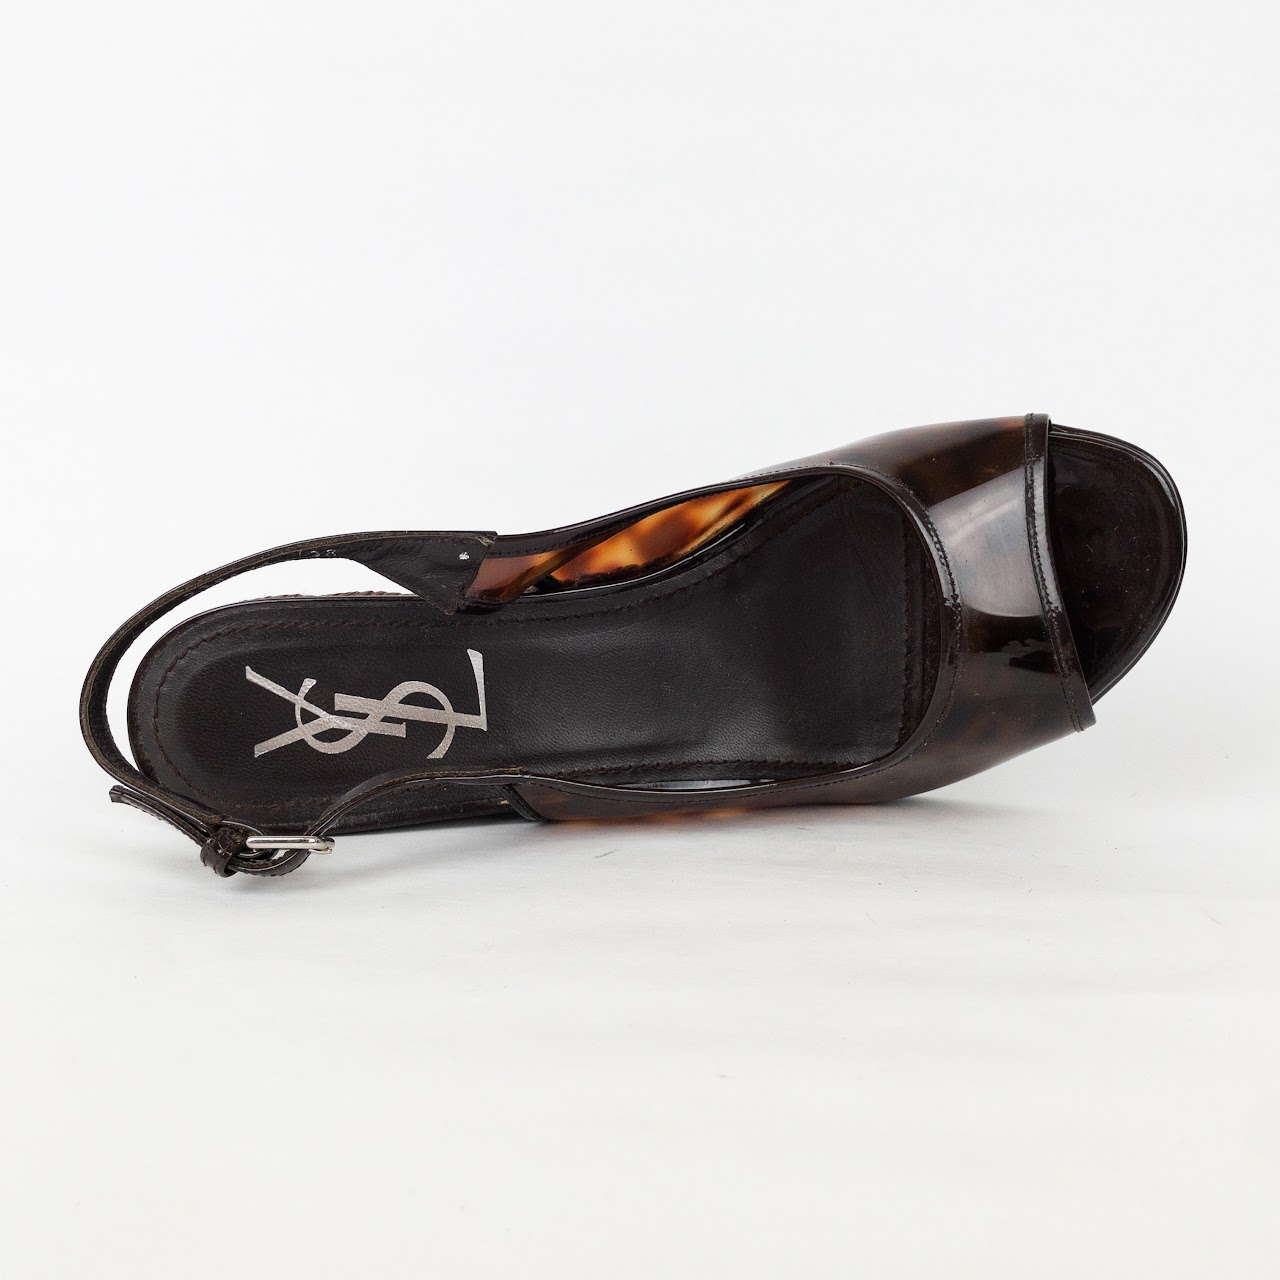 Yves Saint Laurent Woven Wedge Heel